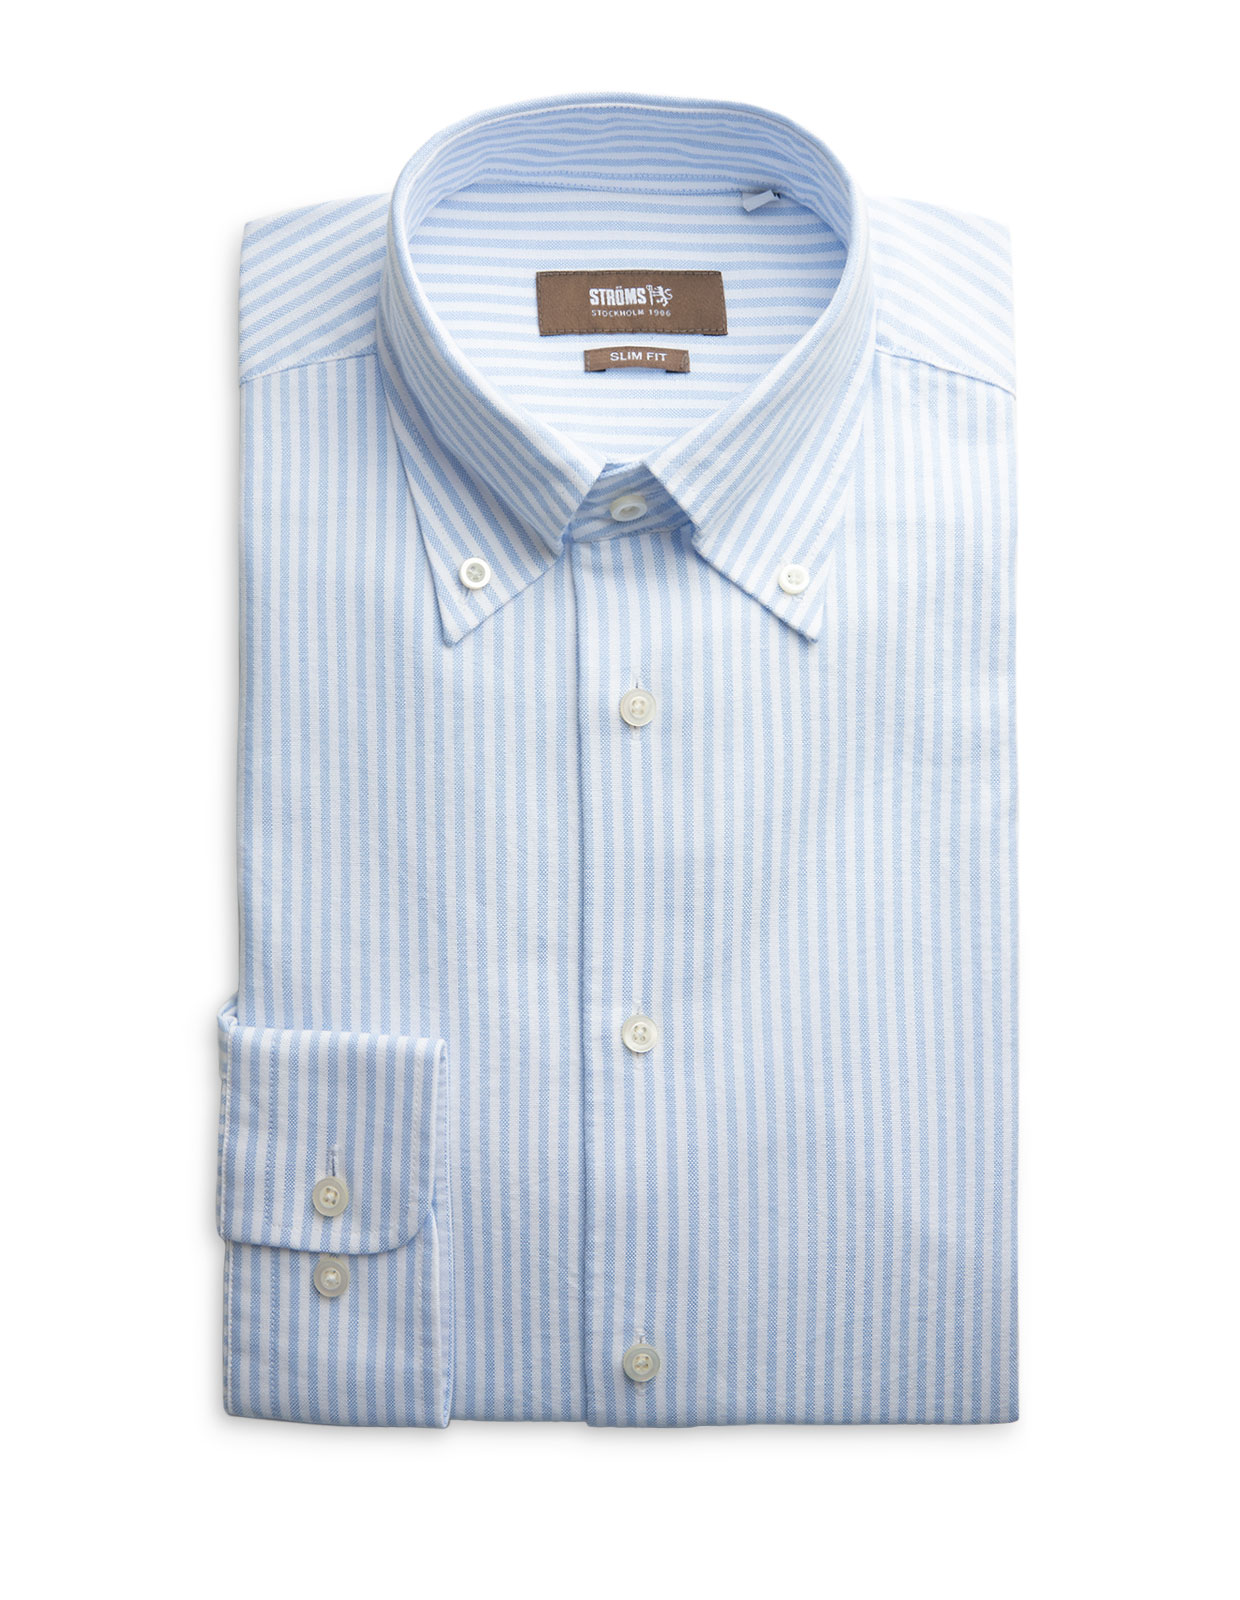 Slim Fit Button Down Oxford Shirt Blue/White Stripe